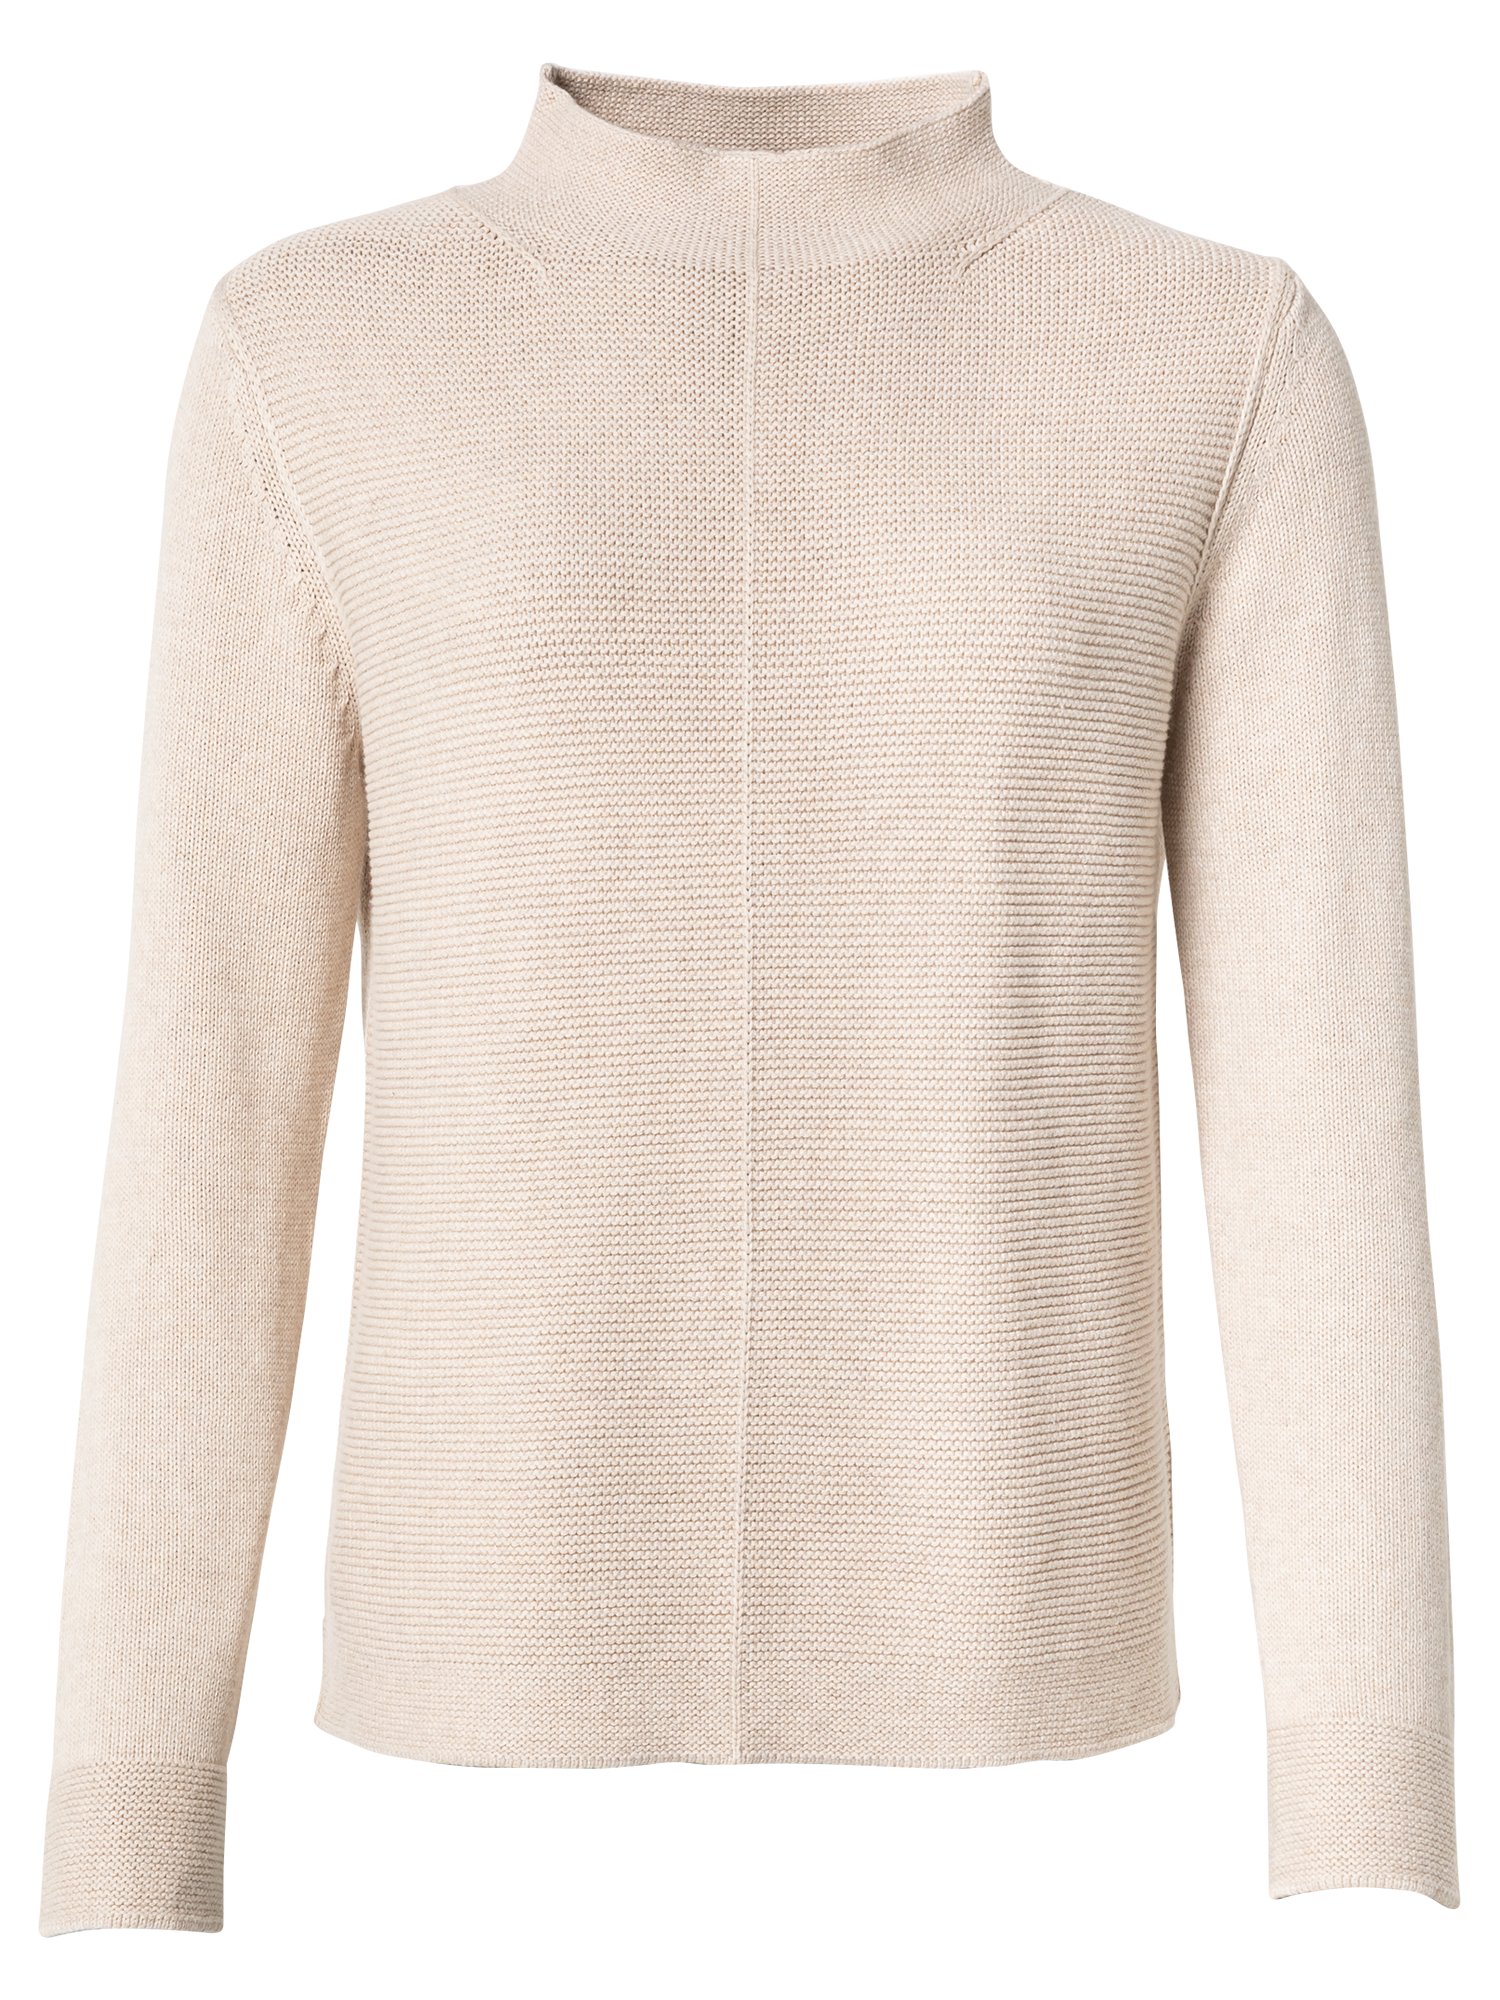 Odzież Kobiety TOM TAILOR Sweter w kolorze Beżowym 